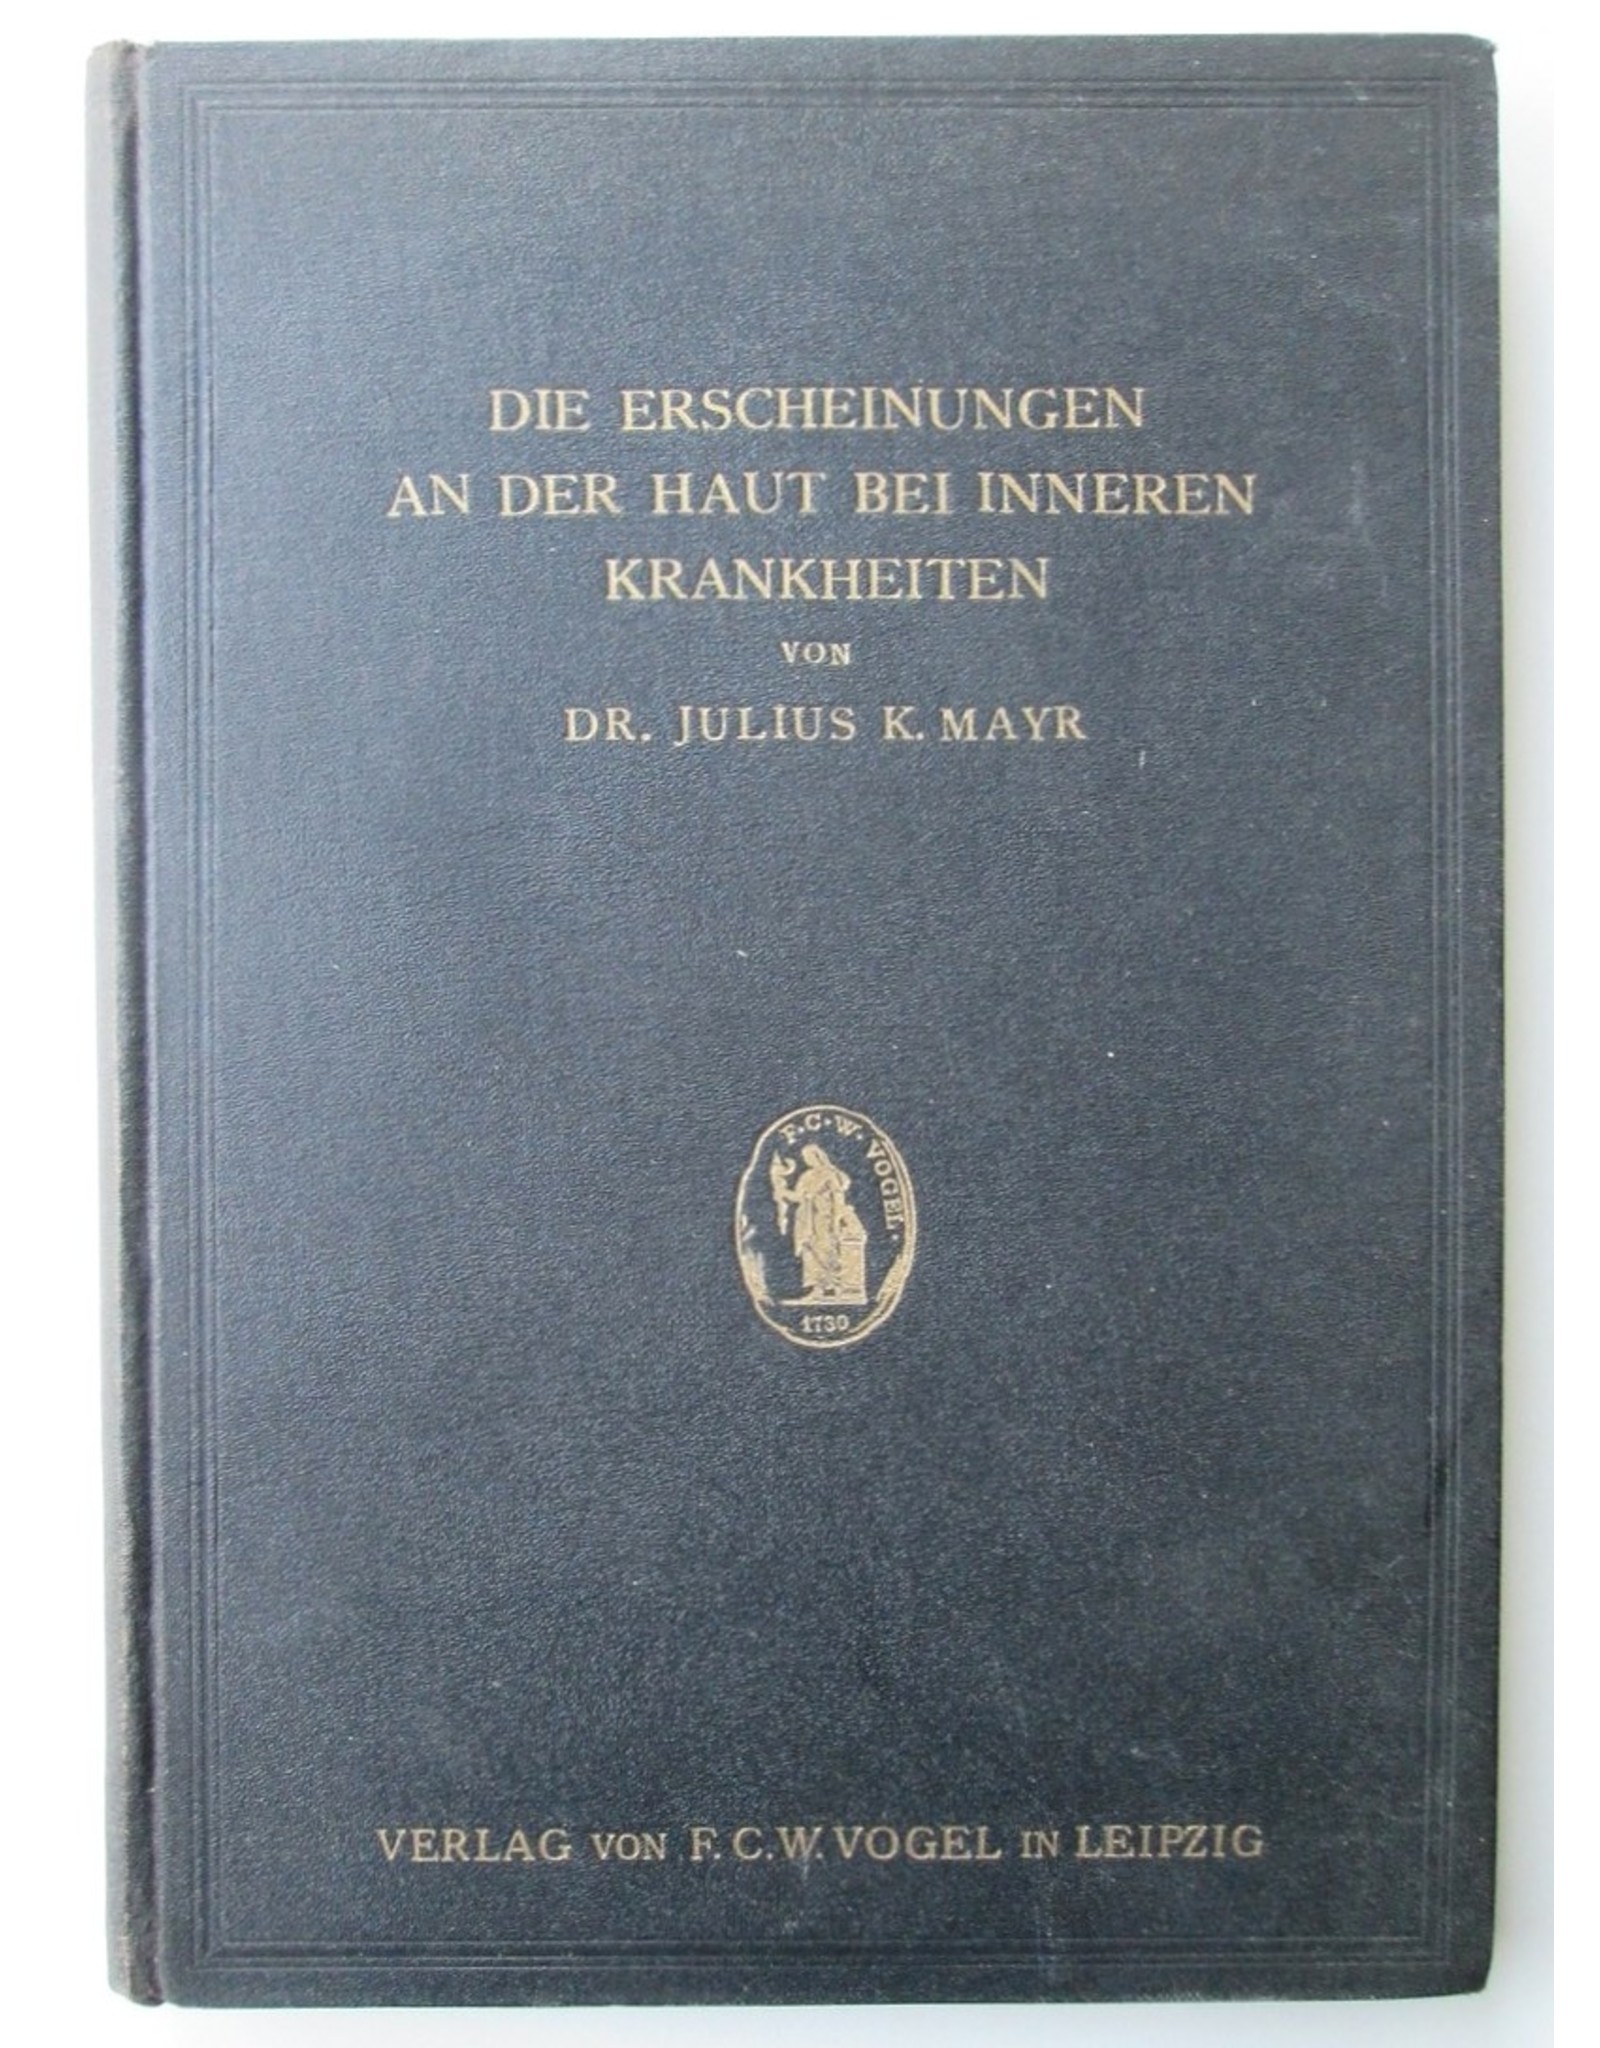 Dr. Julius K. Mayr - Die Erscheinungen an der Haut bei inneren Krankheiten einschliesslich der durch Behandlung bedingten Schädigungen. [...]